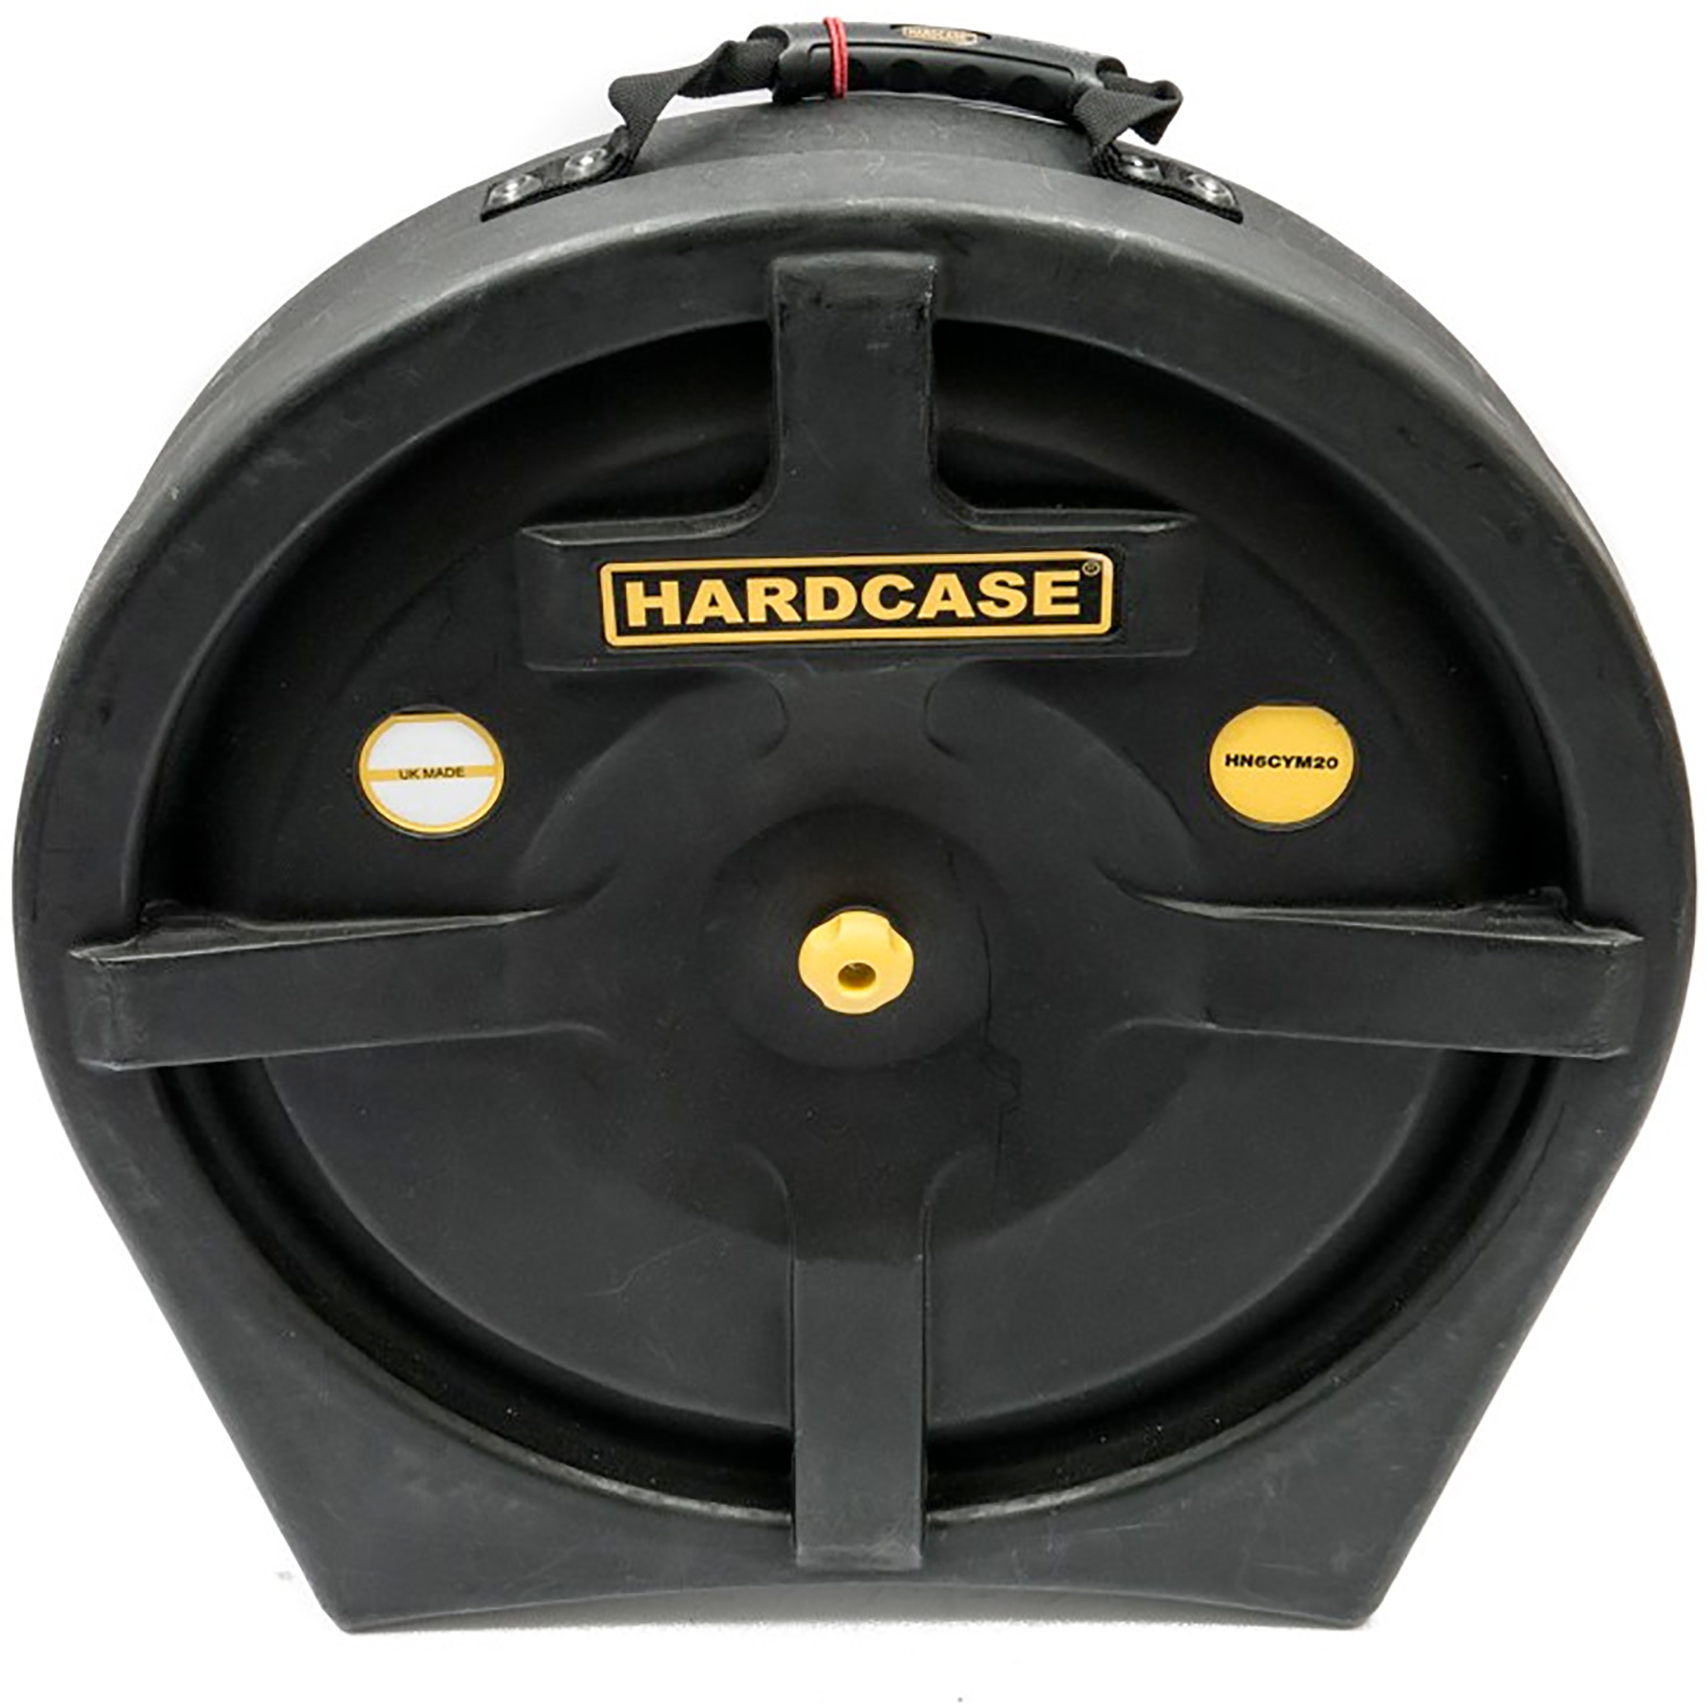 Hardcase Hn6cym20 Etui 6 Cymbales - Estuche para cascos de batería - Main picture